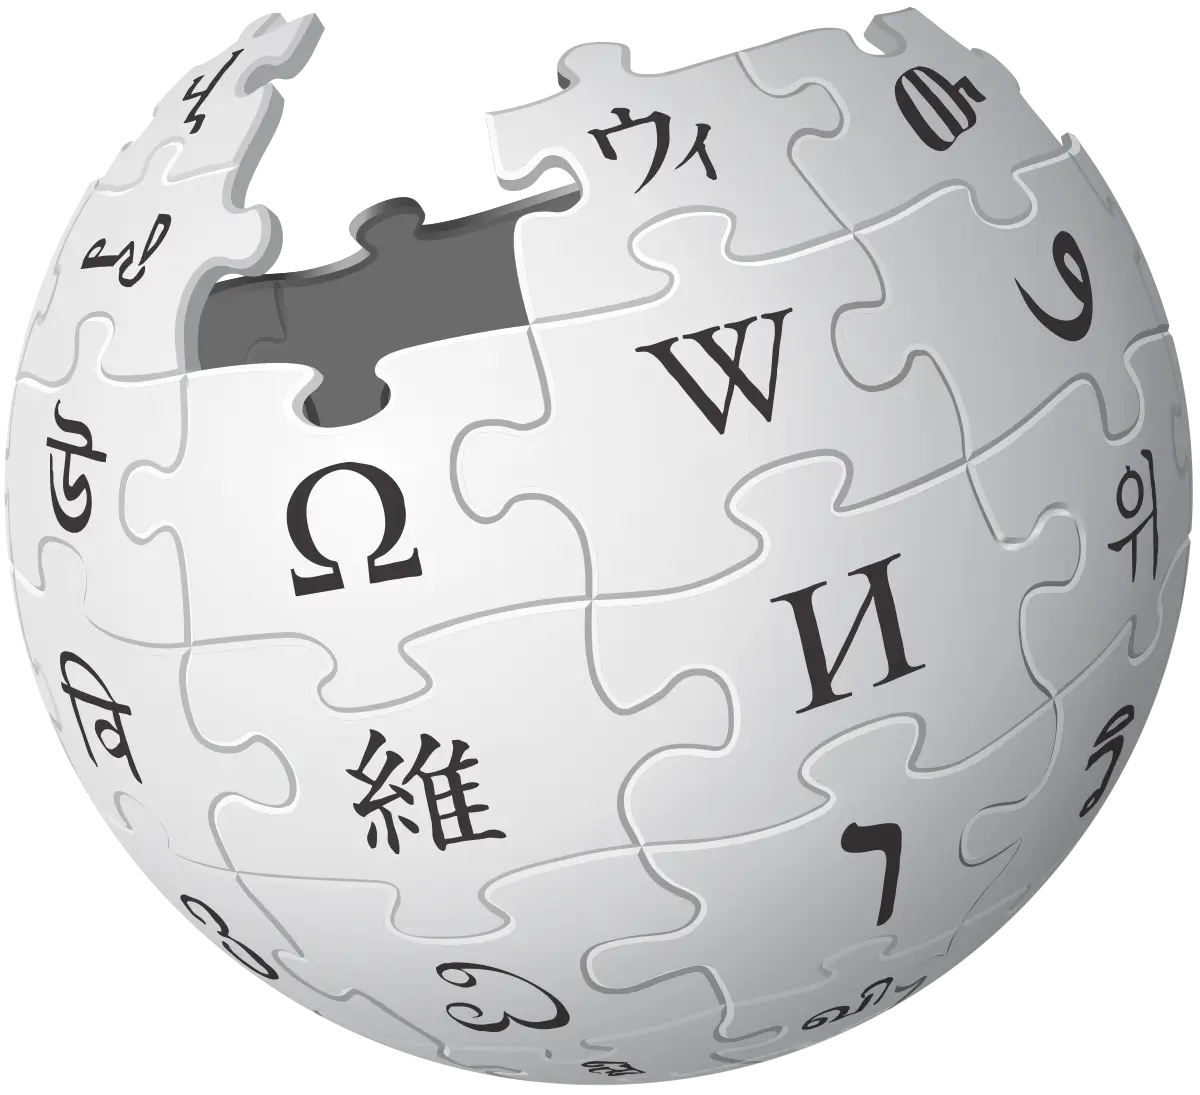 wiki page writing service